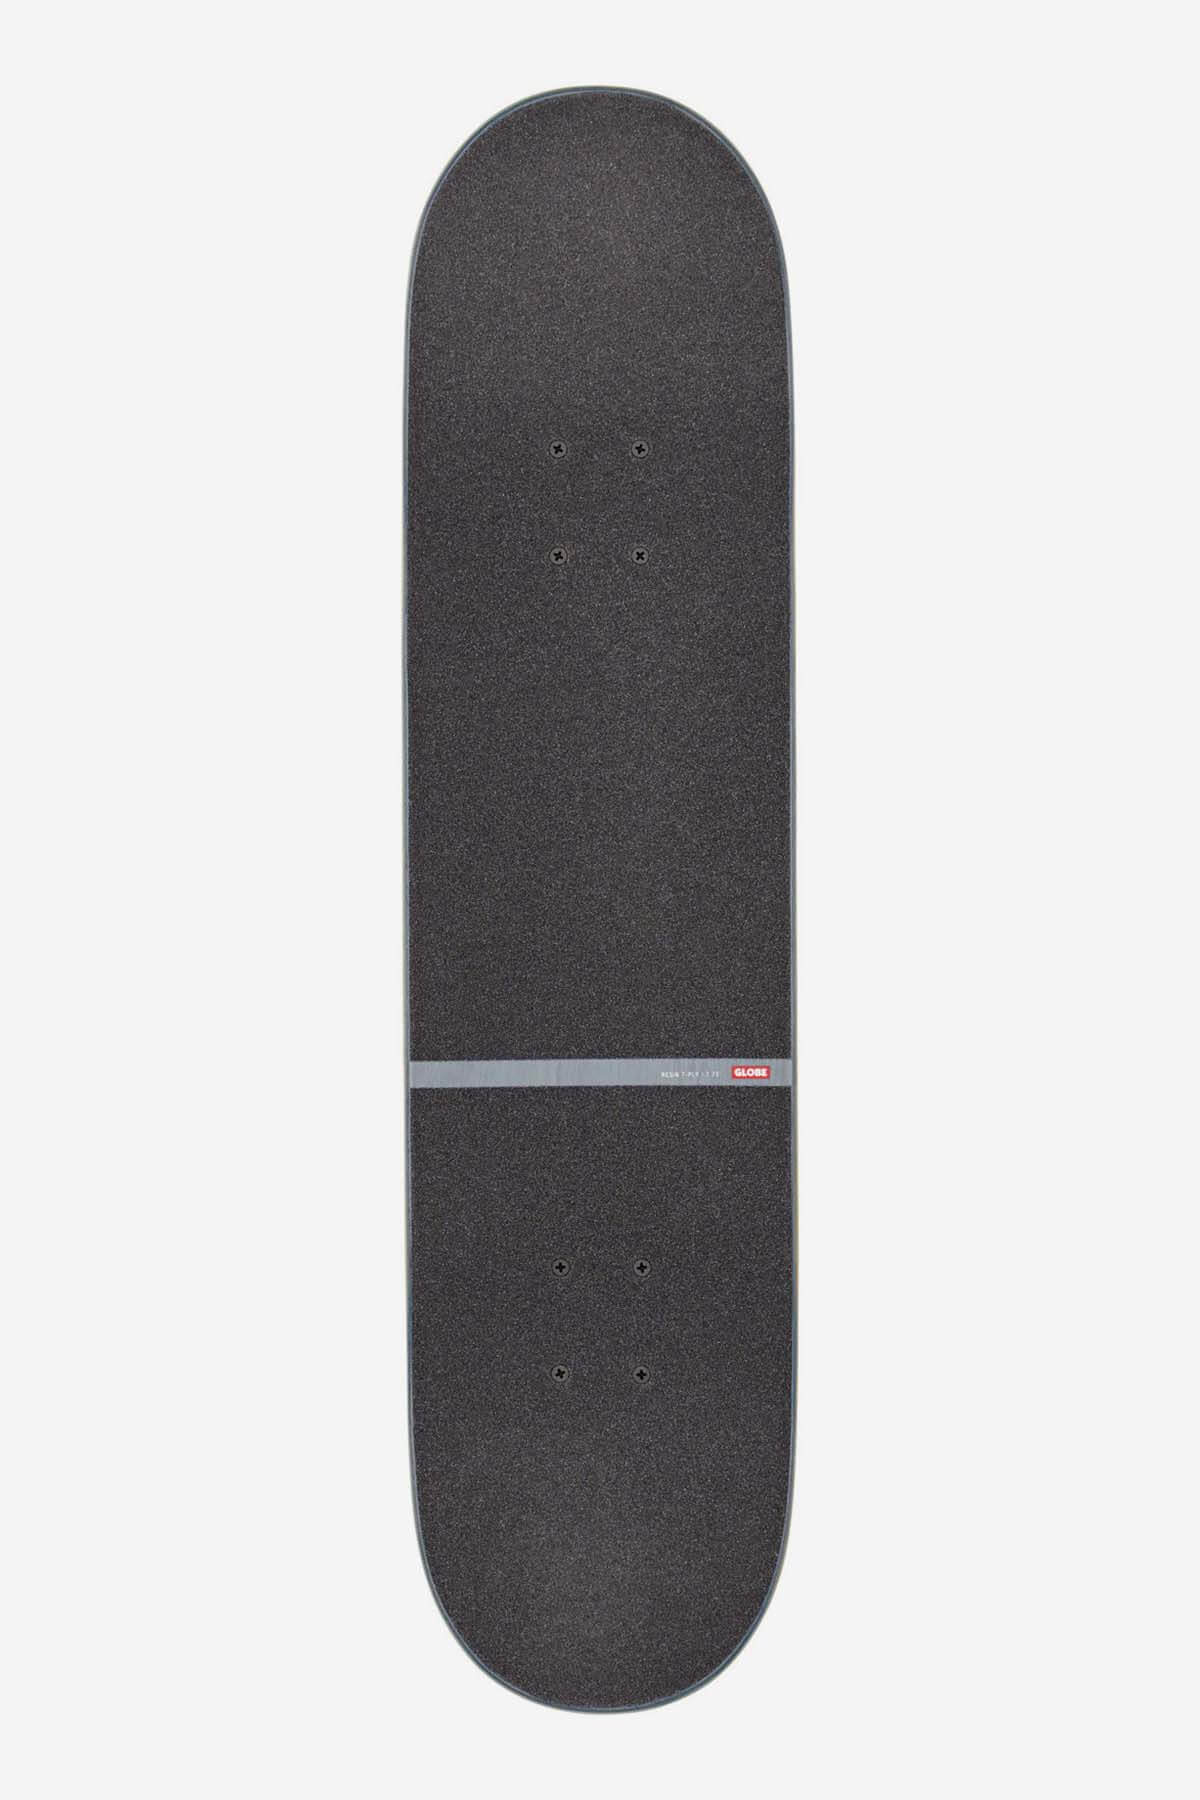 Globe - G1 D Stack- Blue/Orange - 7.75" Komplett Skateboard